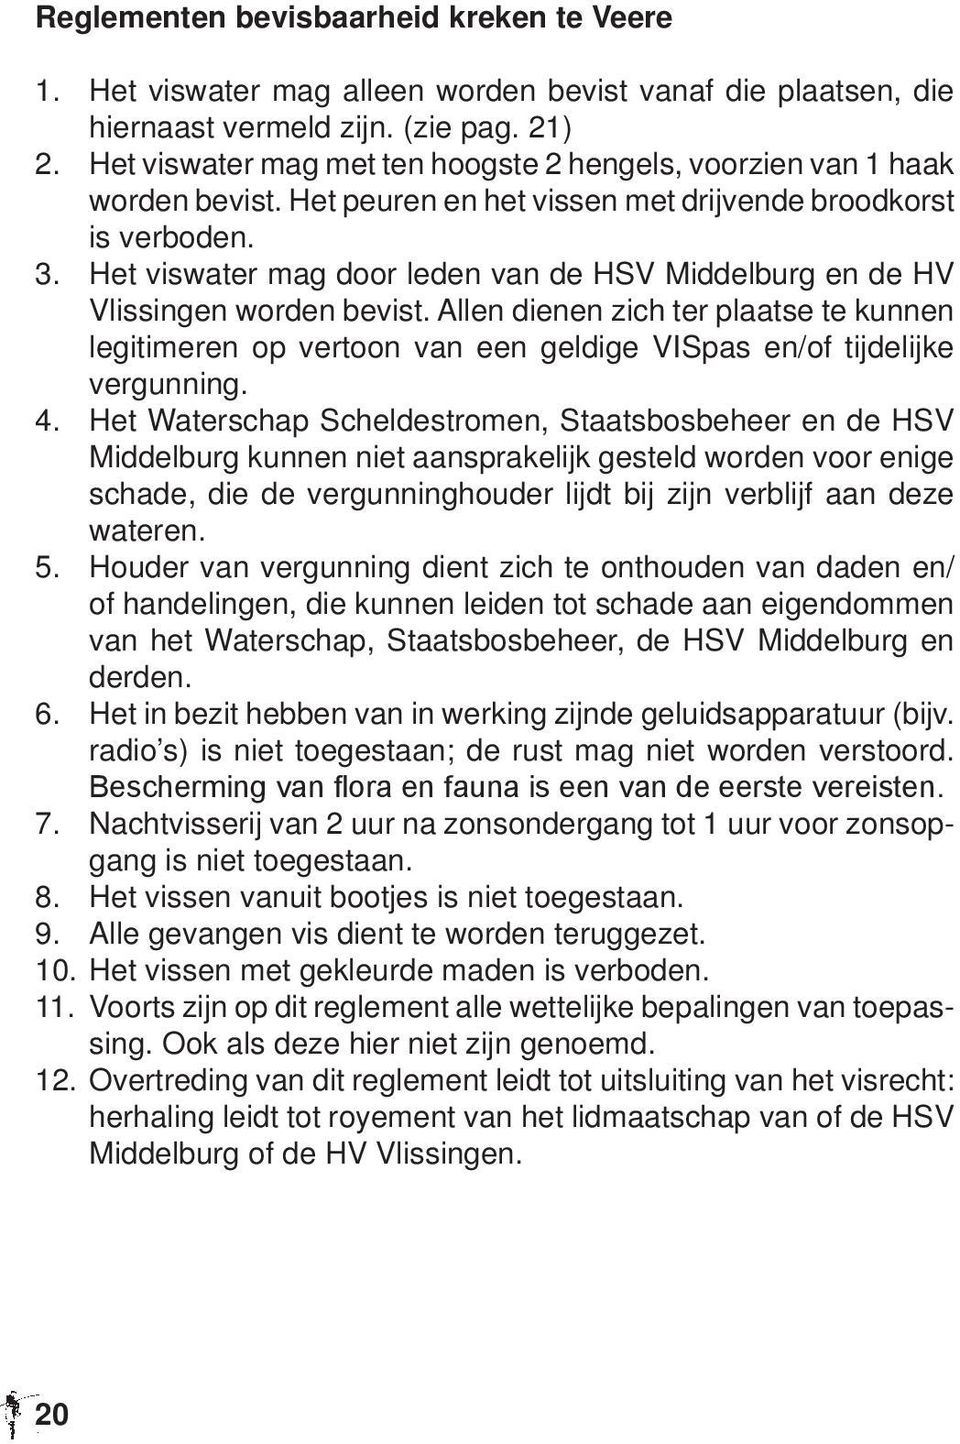 Het viswater mag door leden van de HSV Middelburg en de HV Vlissingen worden bevist. Allen dienen zich ter plaatse te kunnen legitimeren op vertoon van een geldige VISpas en/of tijdelijke vergunning.